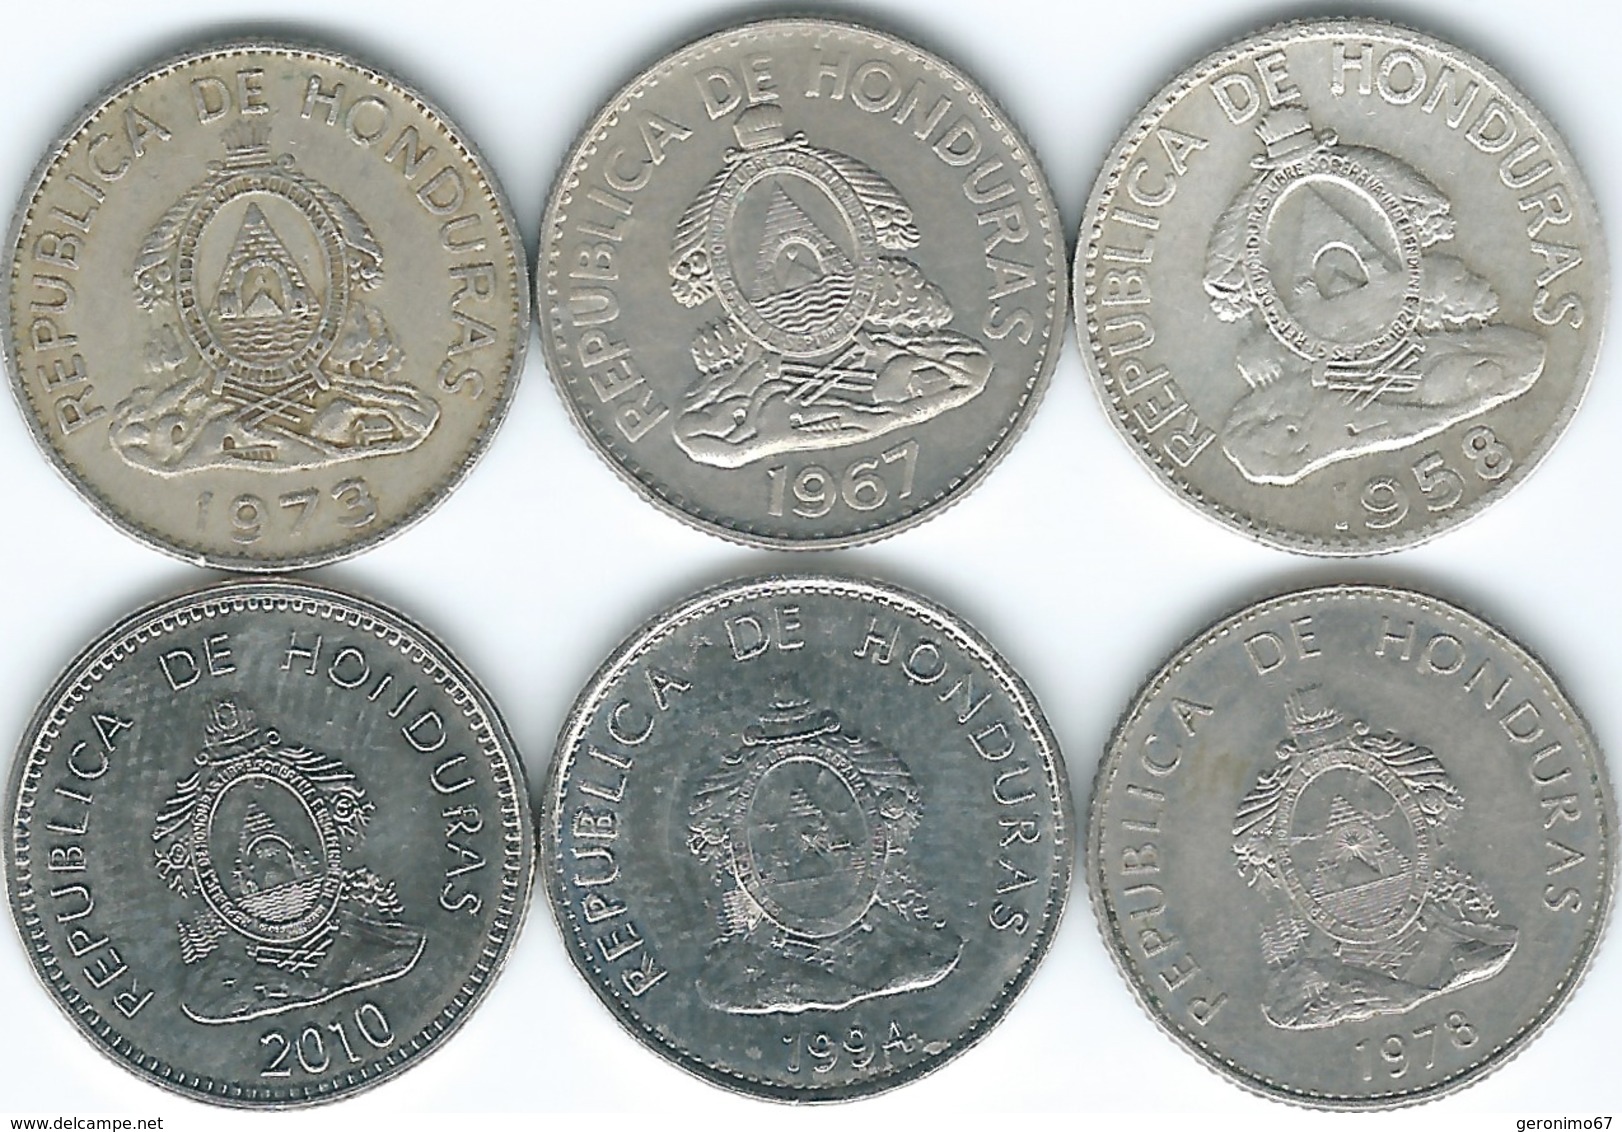 Honduras - 20 Centavos - 1958 (KM73) 1967 (KM79) 1973 (KM81) 1978 (KM83.1) 1994 (KM83a.1) 2010 (KM83a.2) - Honduras